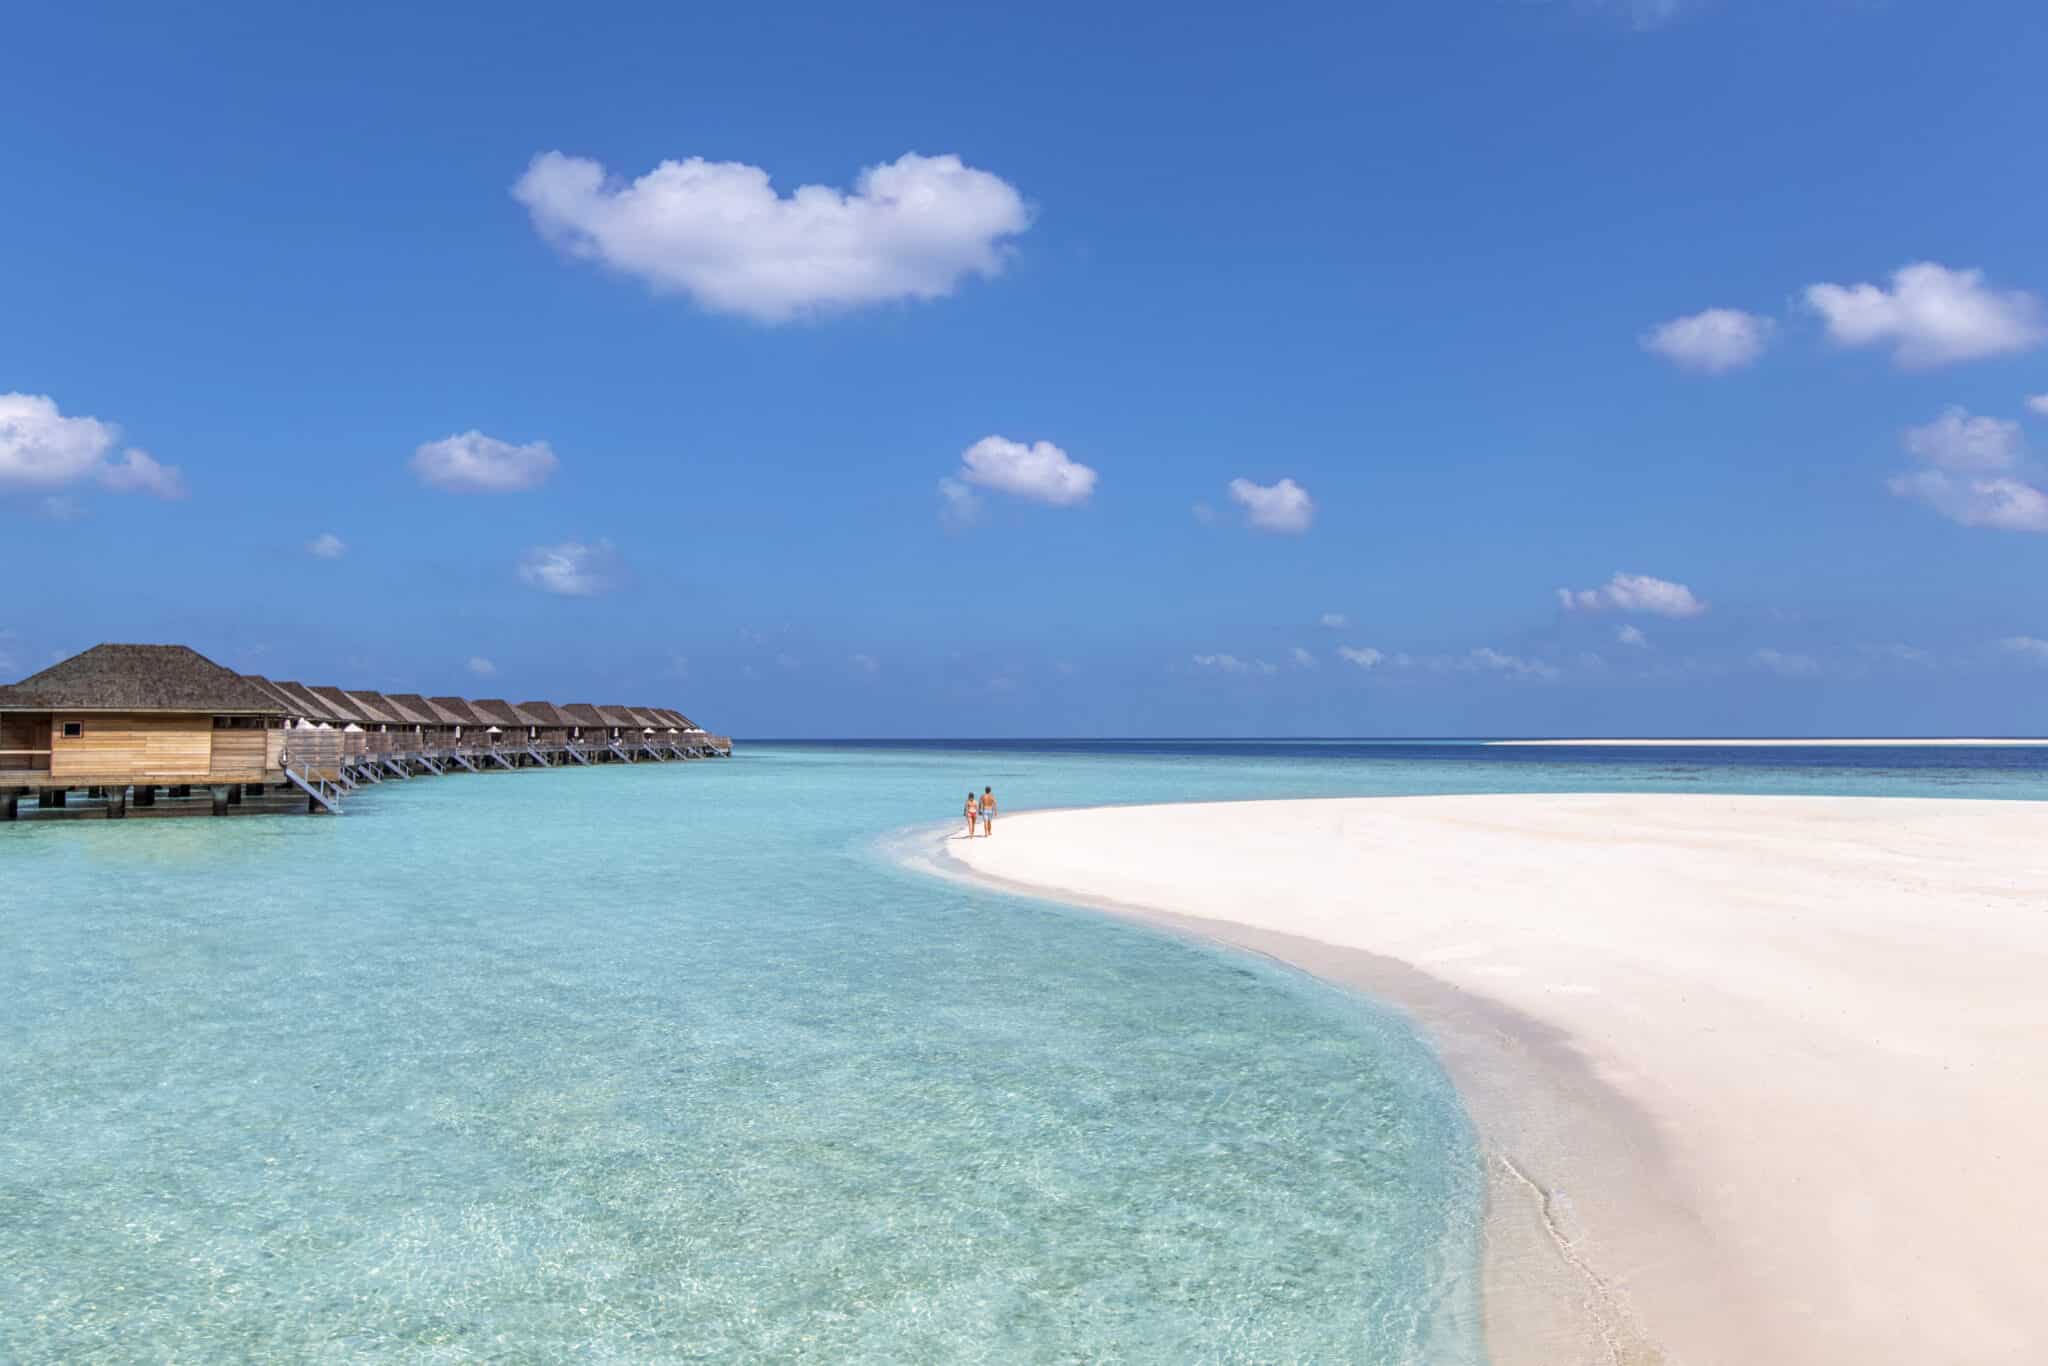 Hurawalhi – единственный отель на острове в соответствии с известной мальдивской концепцией «один остров, один отель», благодаря чему он гарантирует гостям уединение.